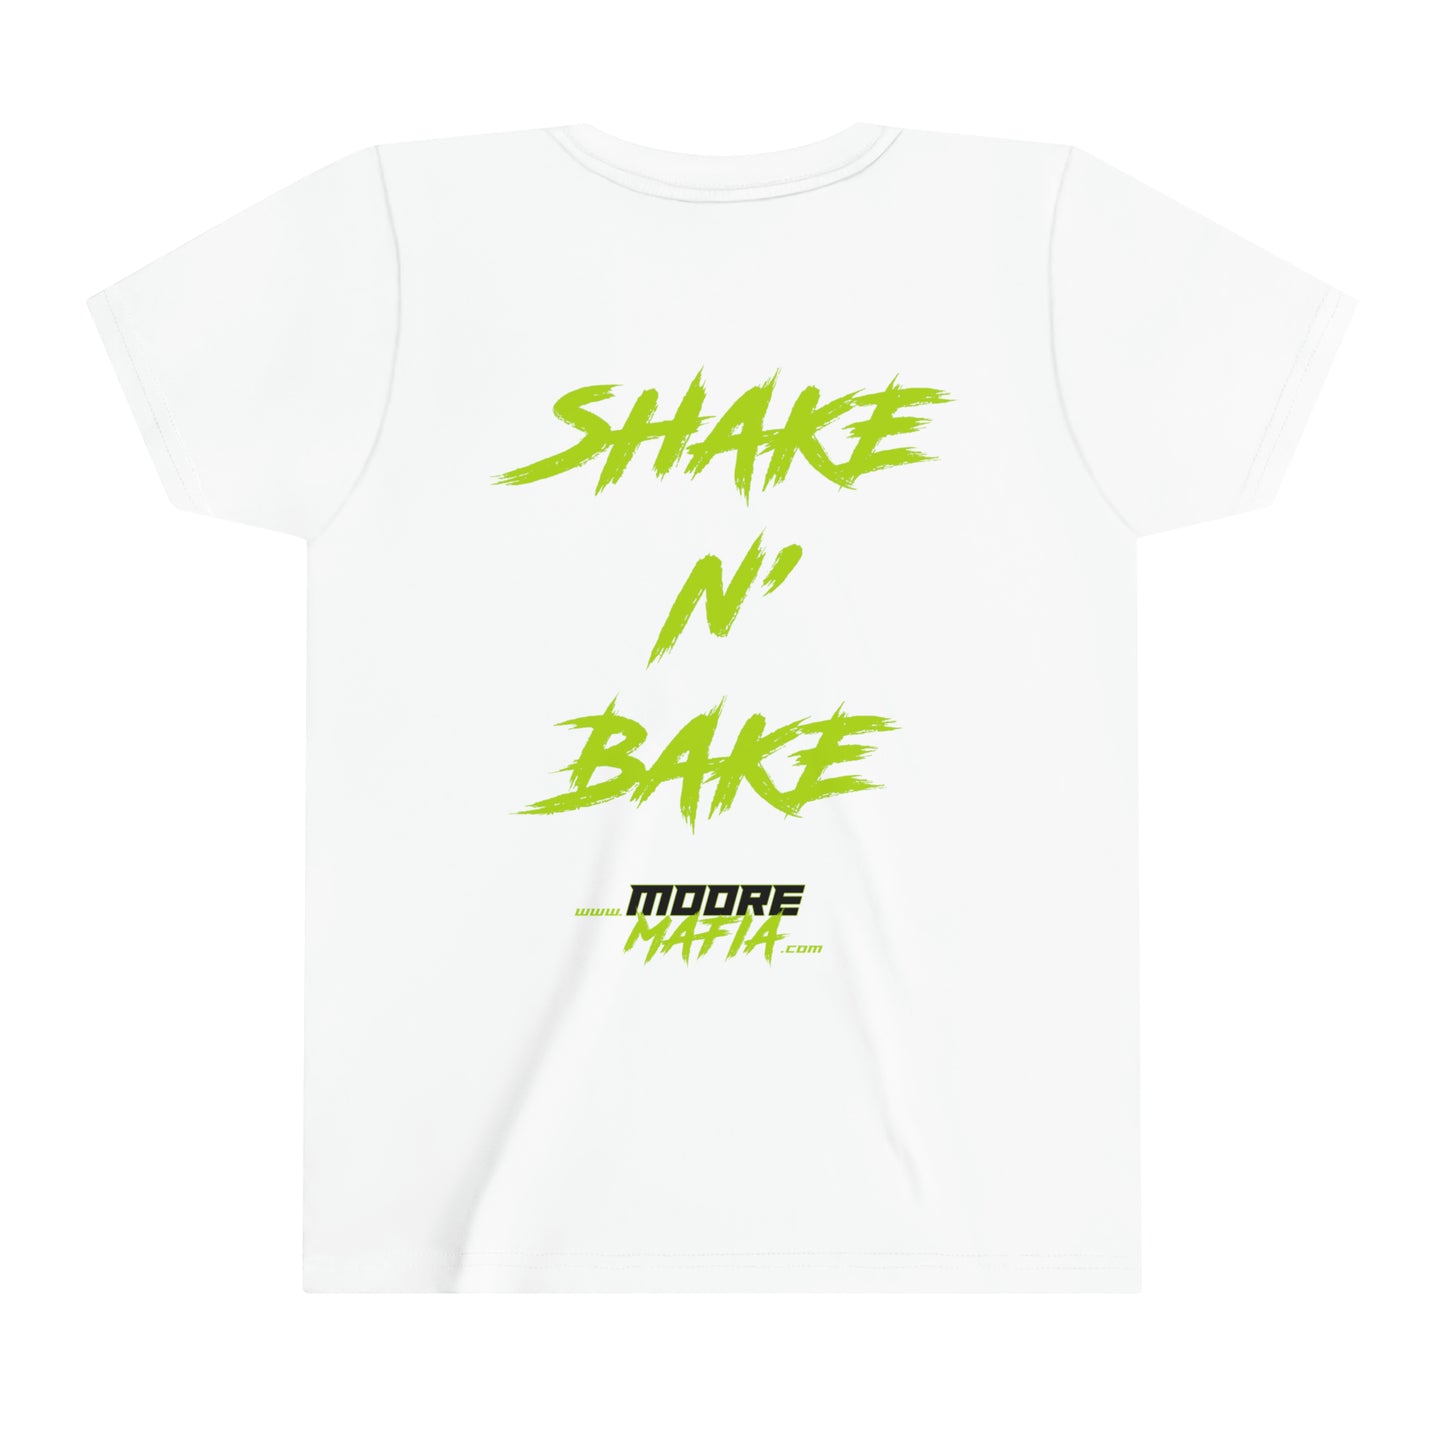 Shake N' Bake Youth Short Sleeve T-Shirt